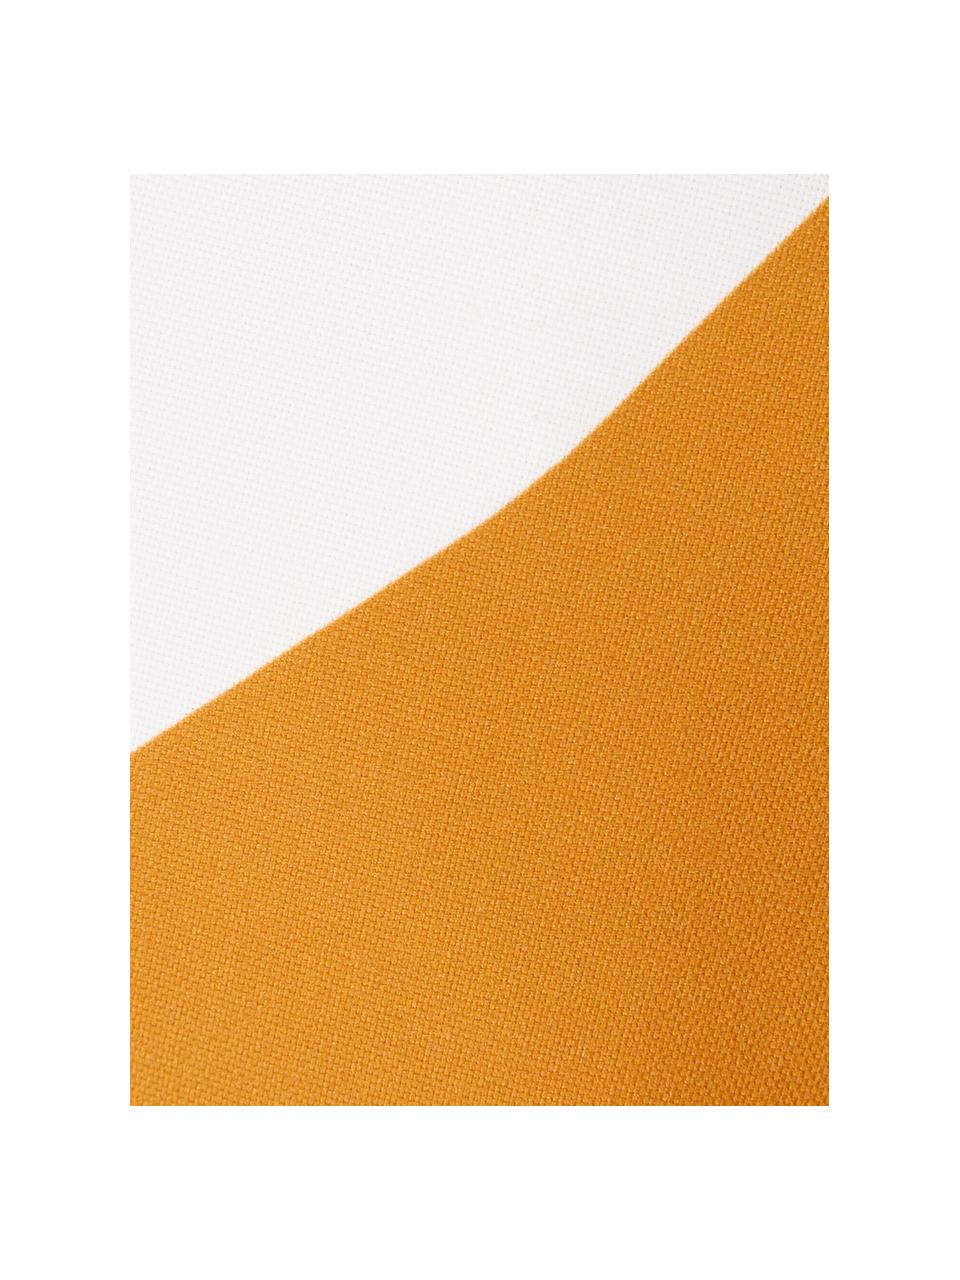 Povlak na polštář s geometrickými tvary Linn, Bílá, tmavě modrá, šedá, oranžová